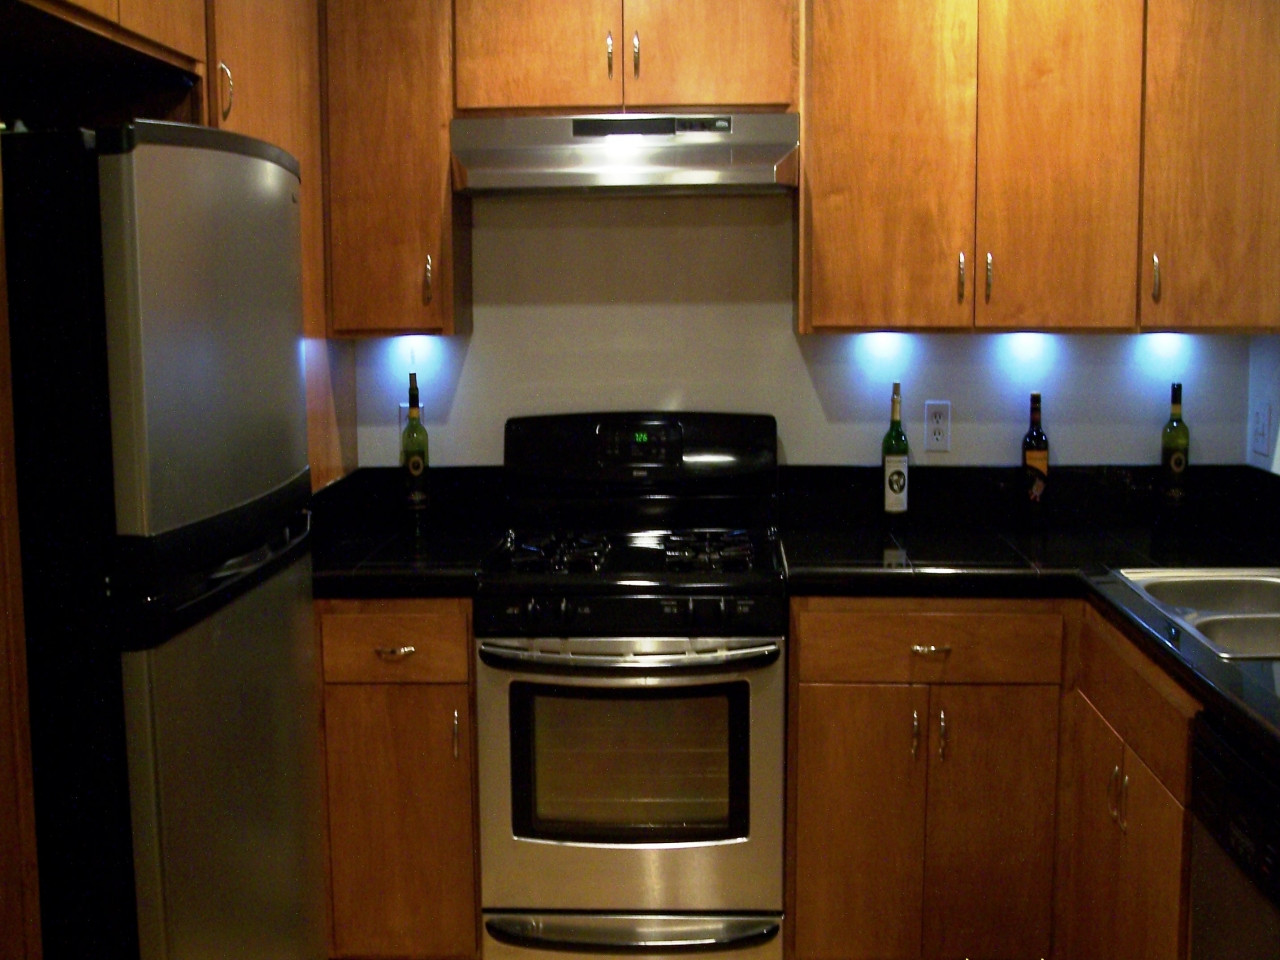 Kitchen Under Cabinet Lighting Options
 Under Cabinet Lighting Options Design Your Kitchen With Ideas